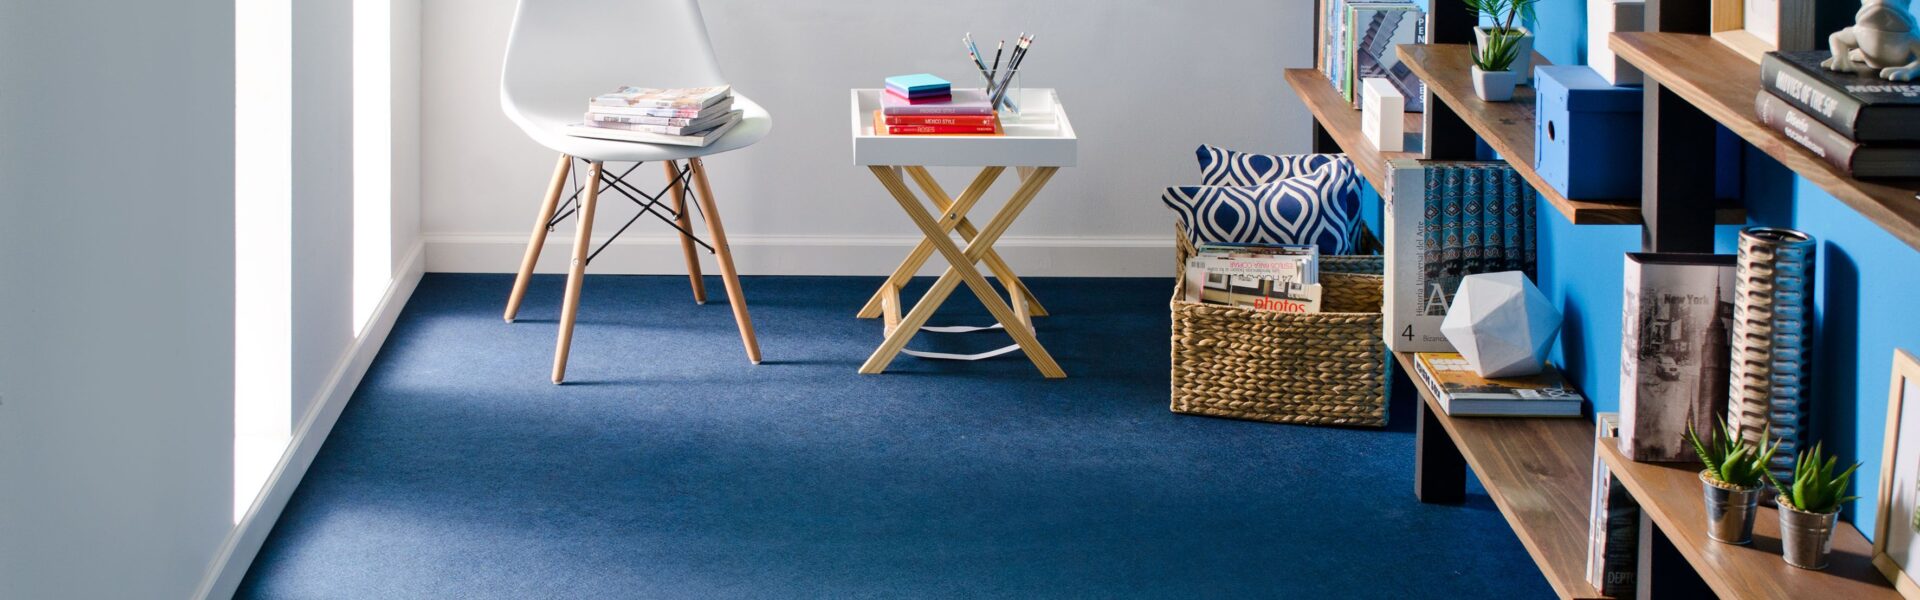 piso de color azul con muebles de madera